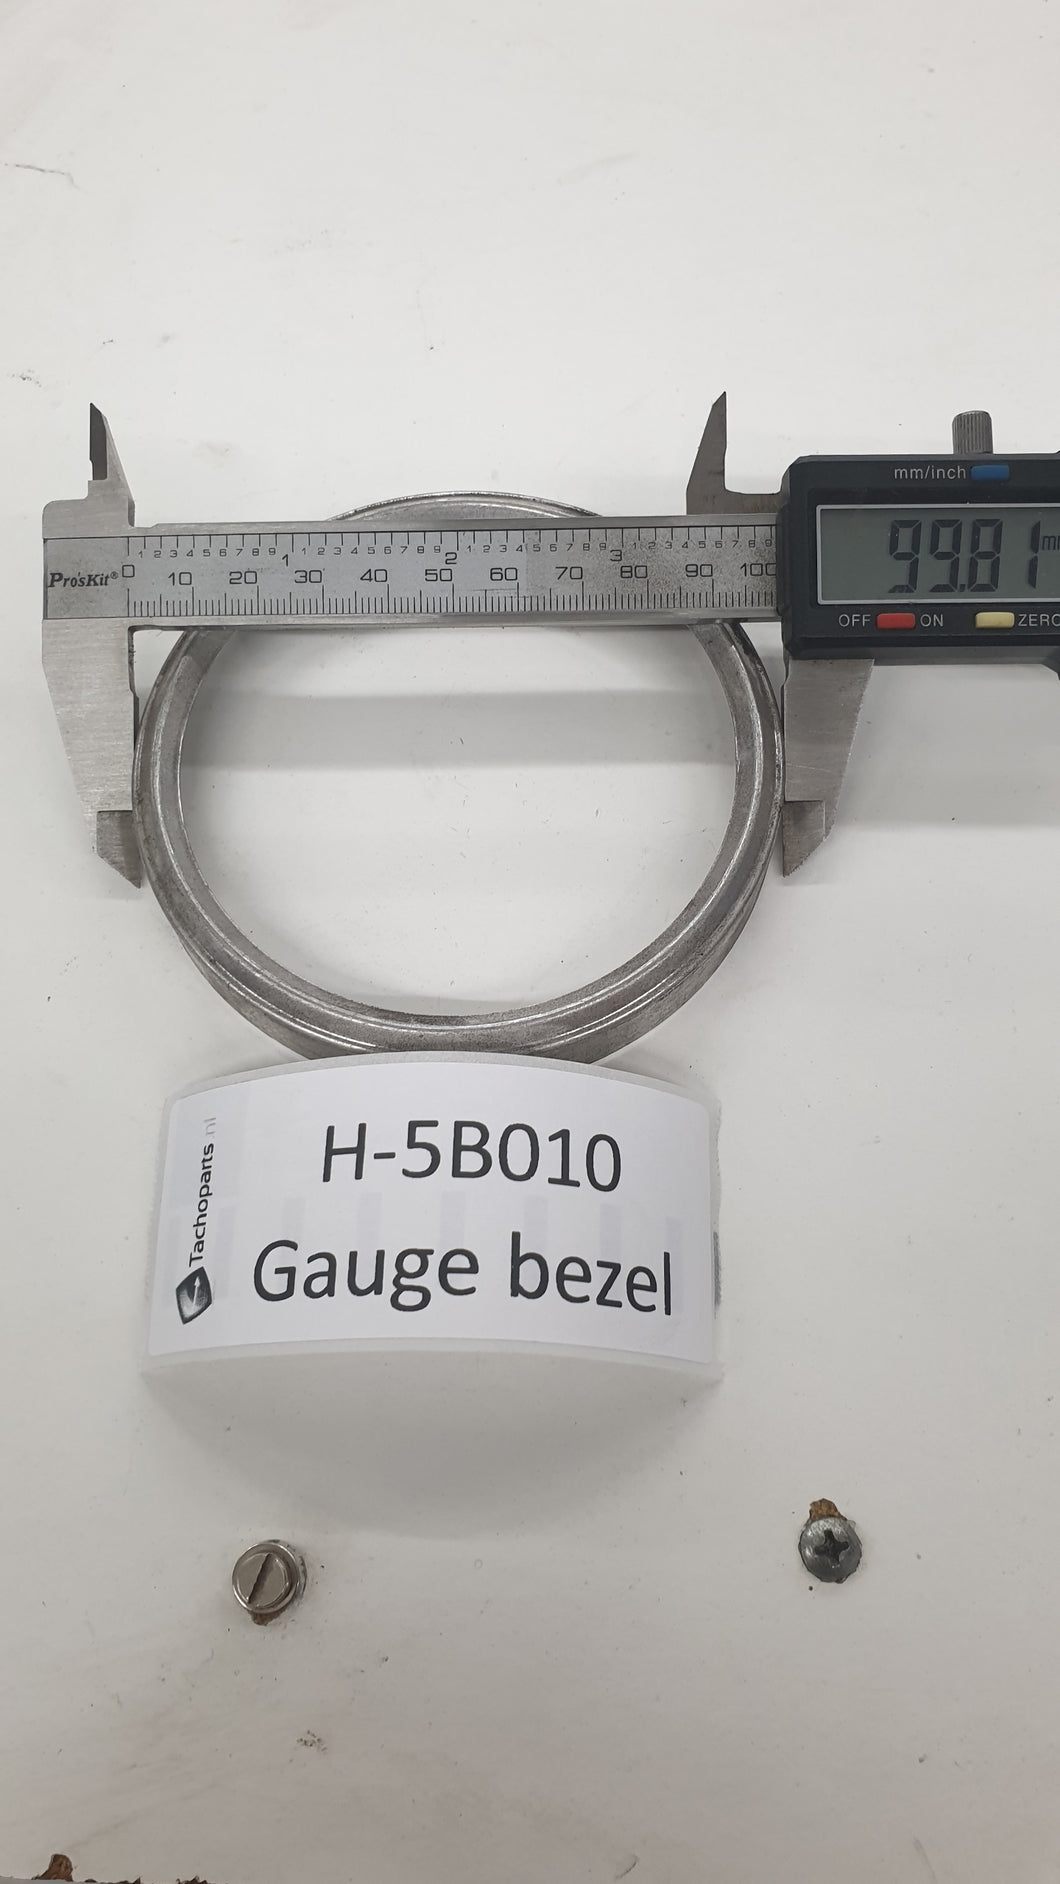 H-5B010 gauge bezel